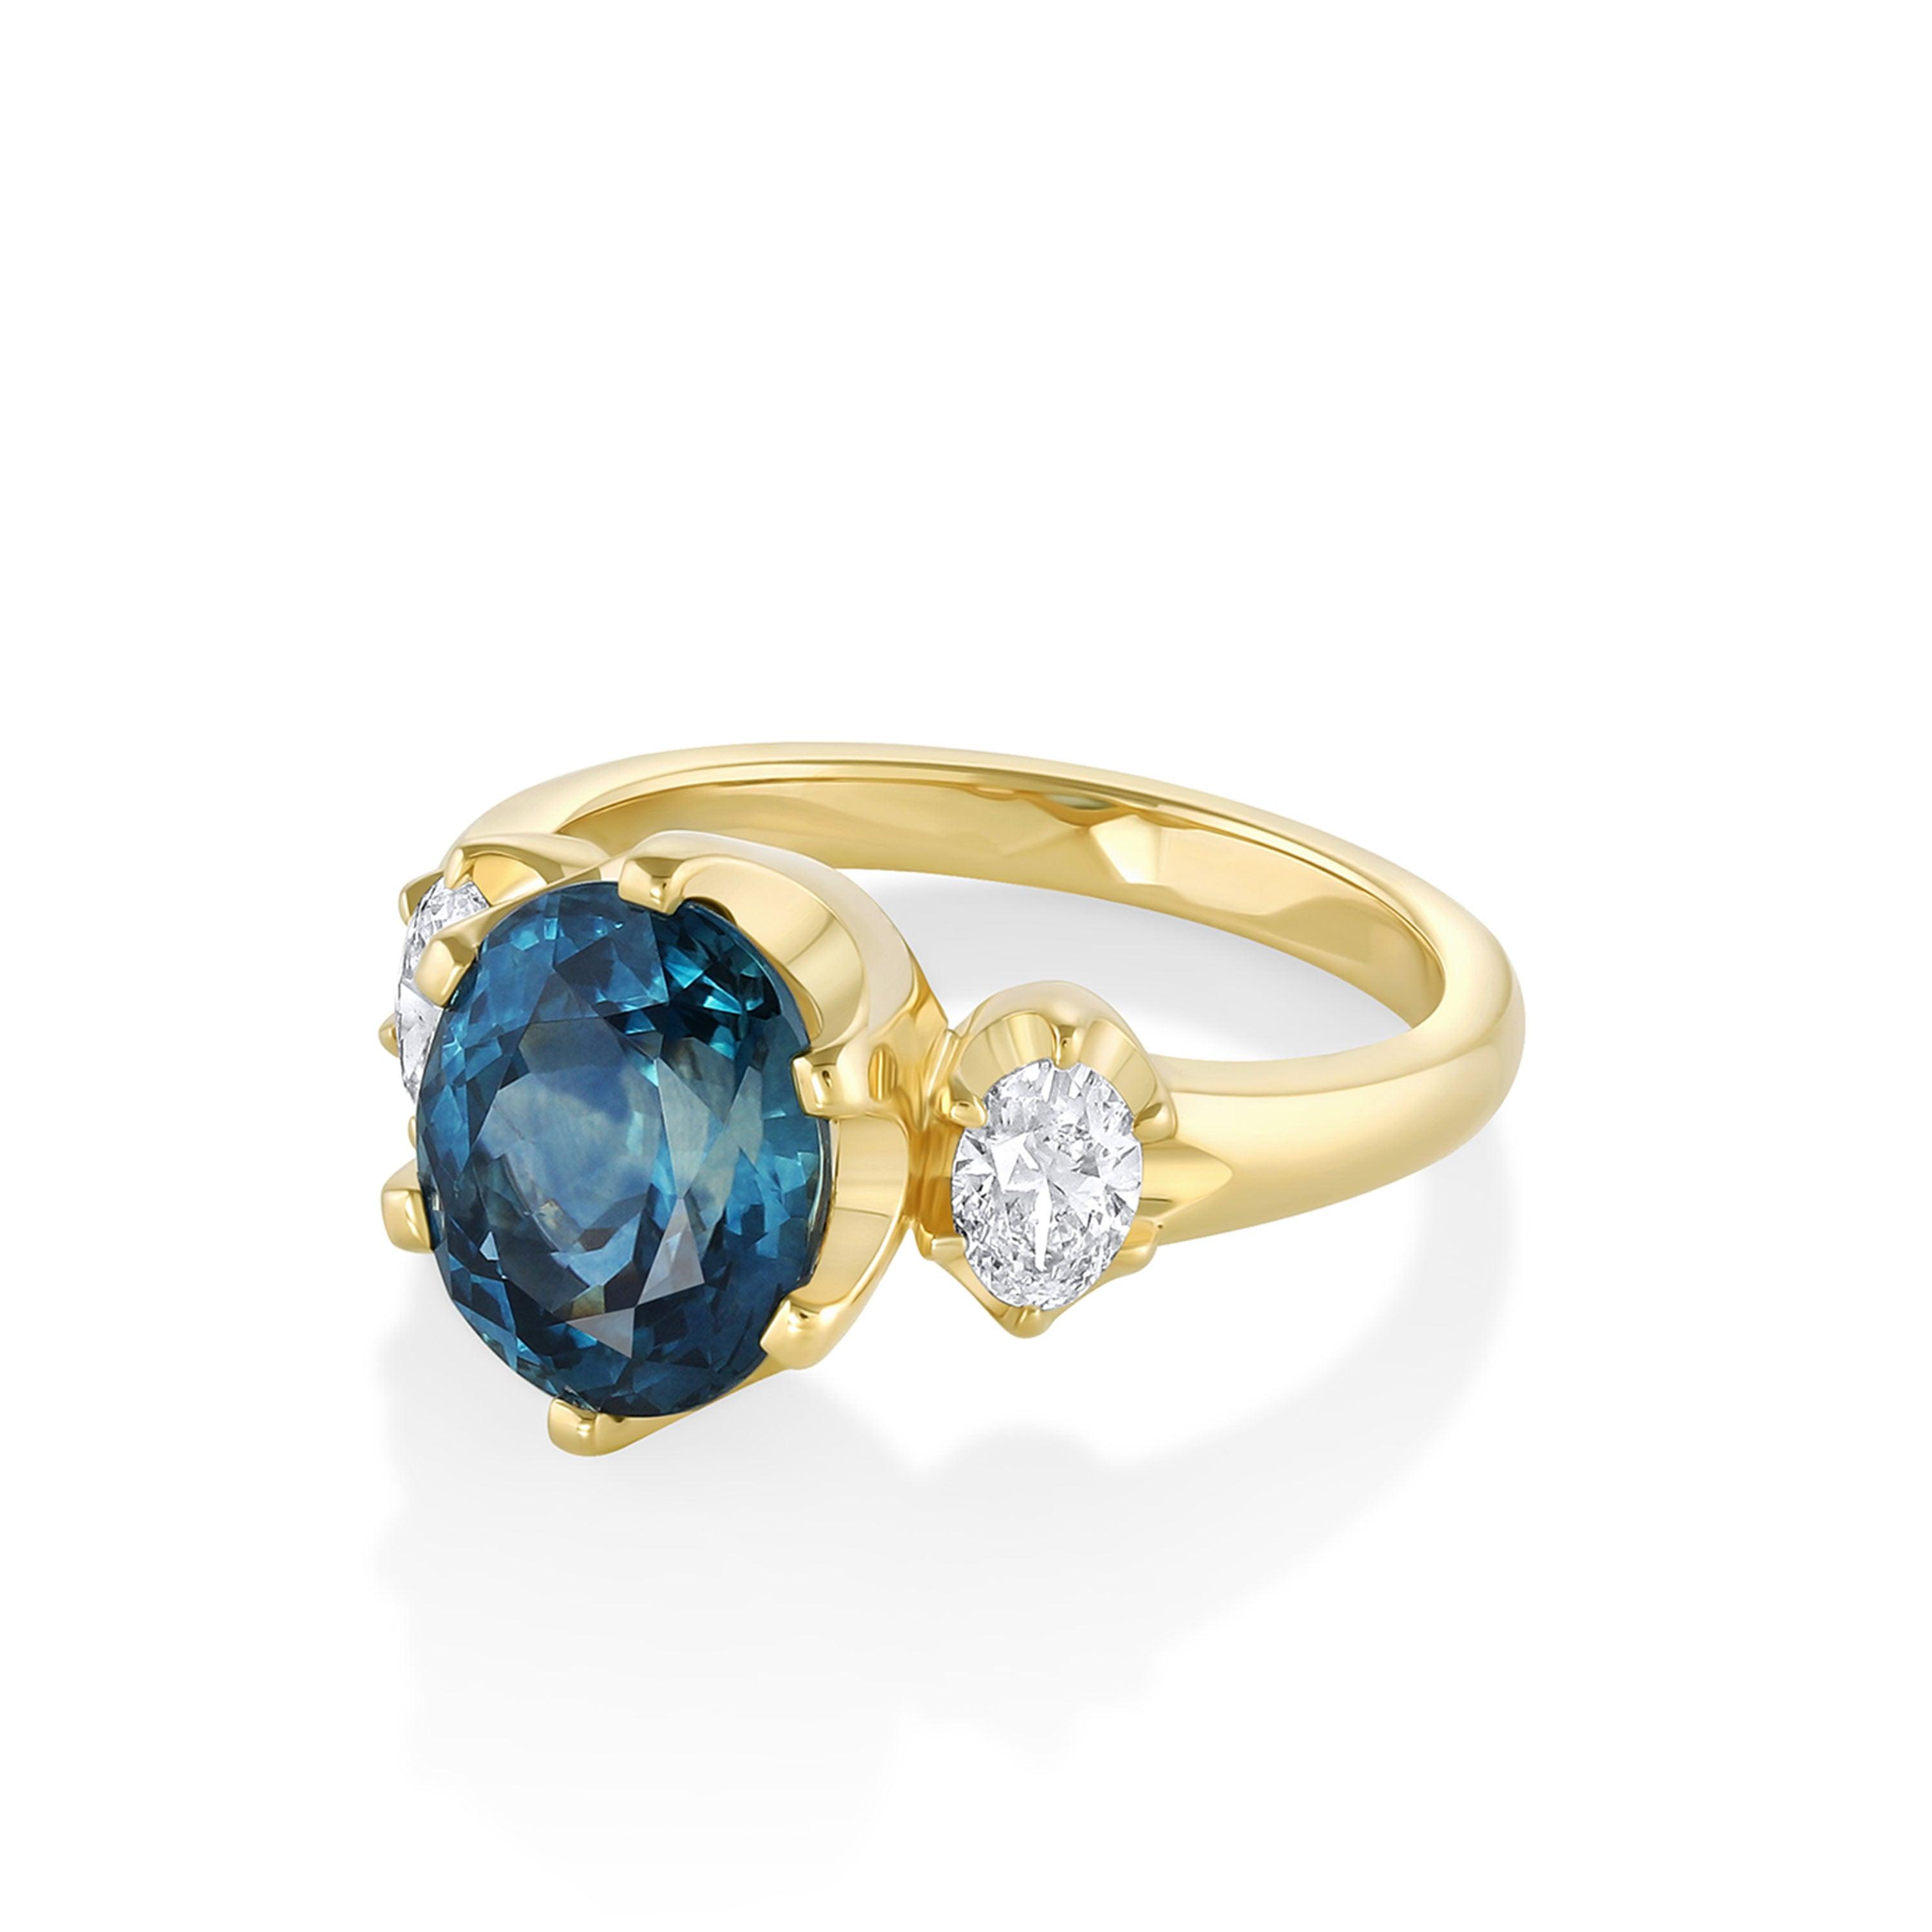 Montana sapphire three stone engagement ring